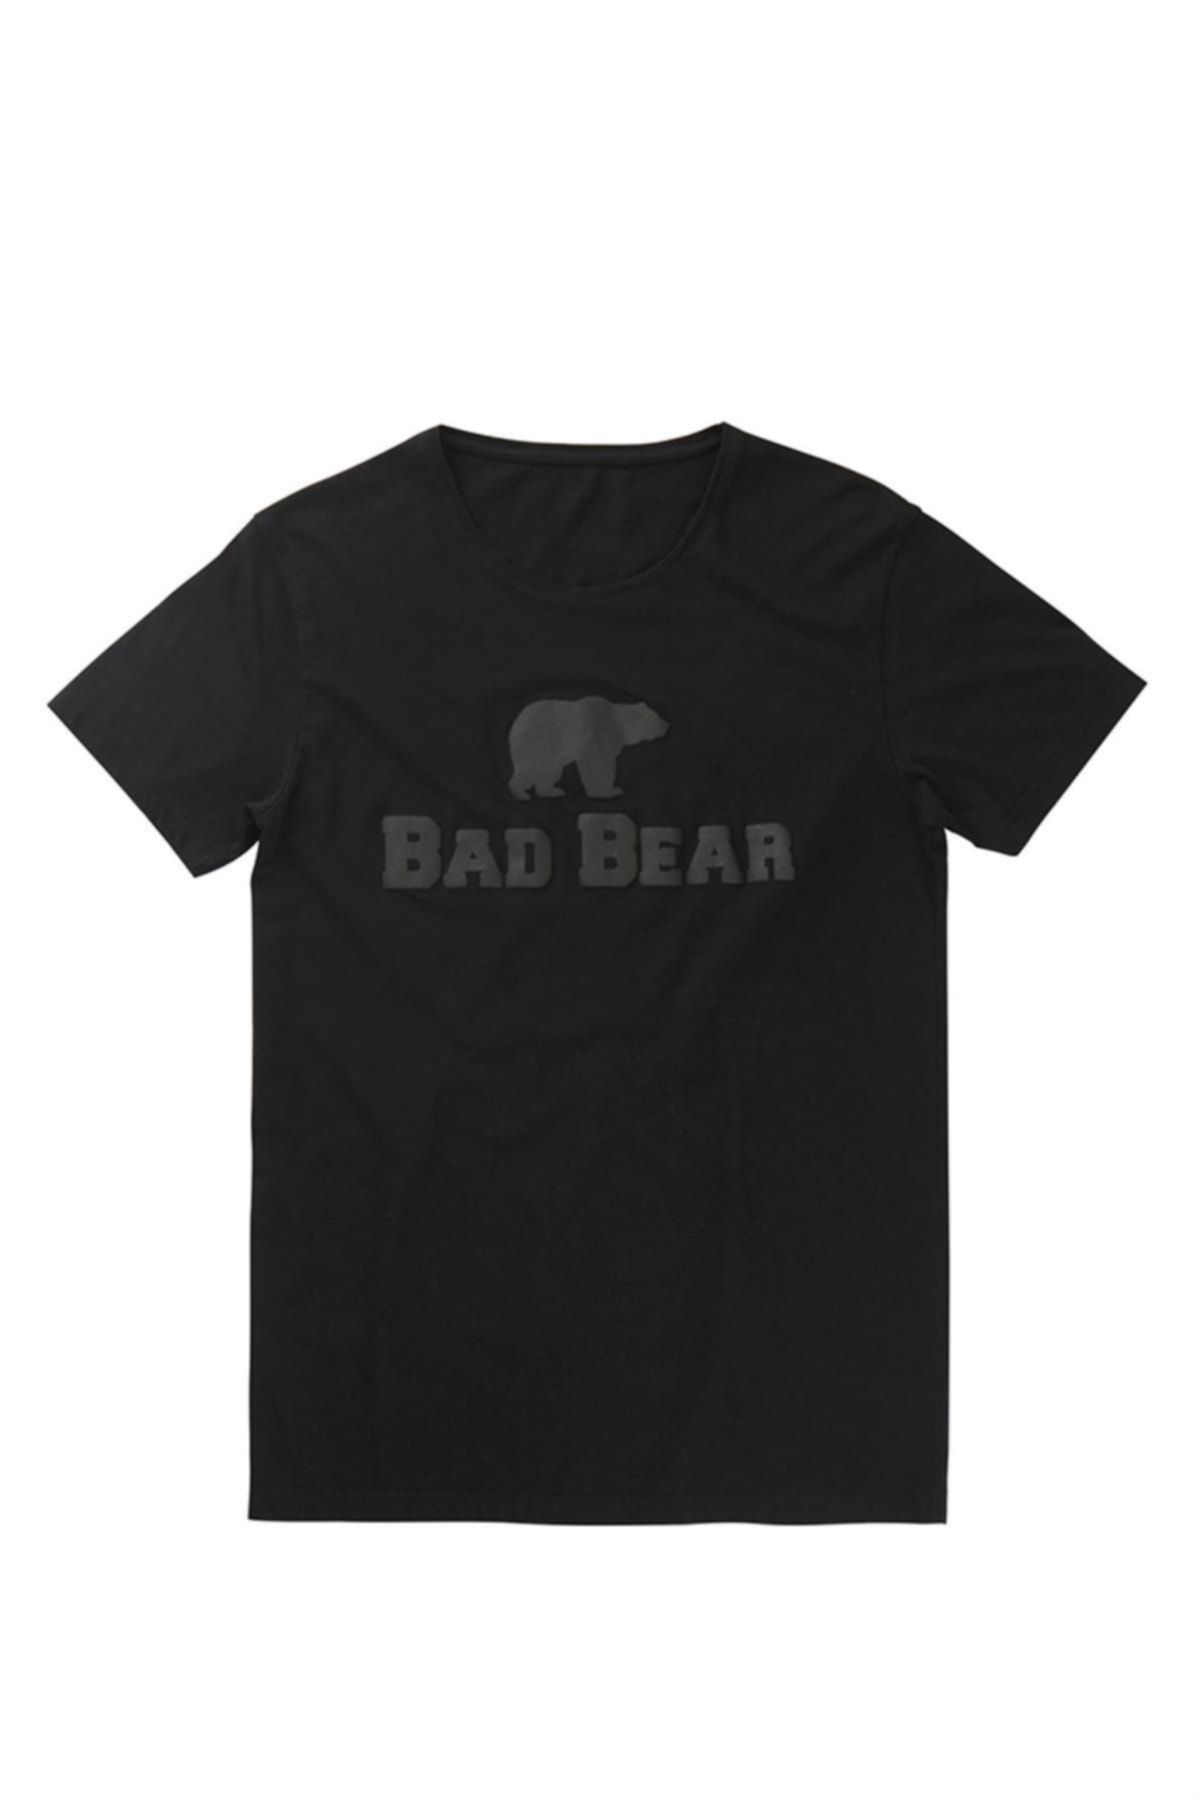 Bad Bear 19.01.07.002 - Tee Erkek Tişört